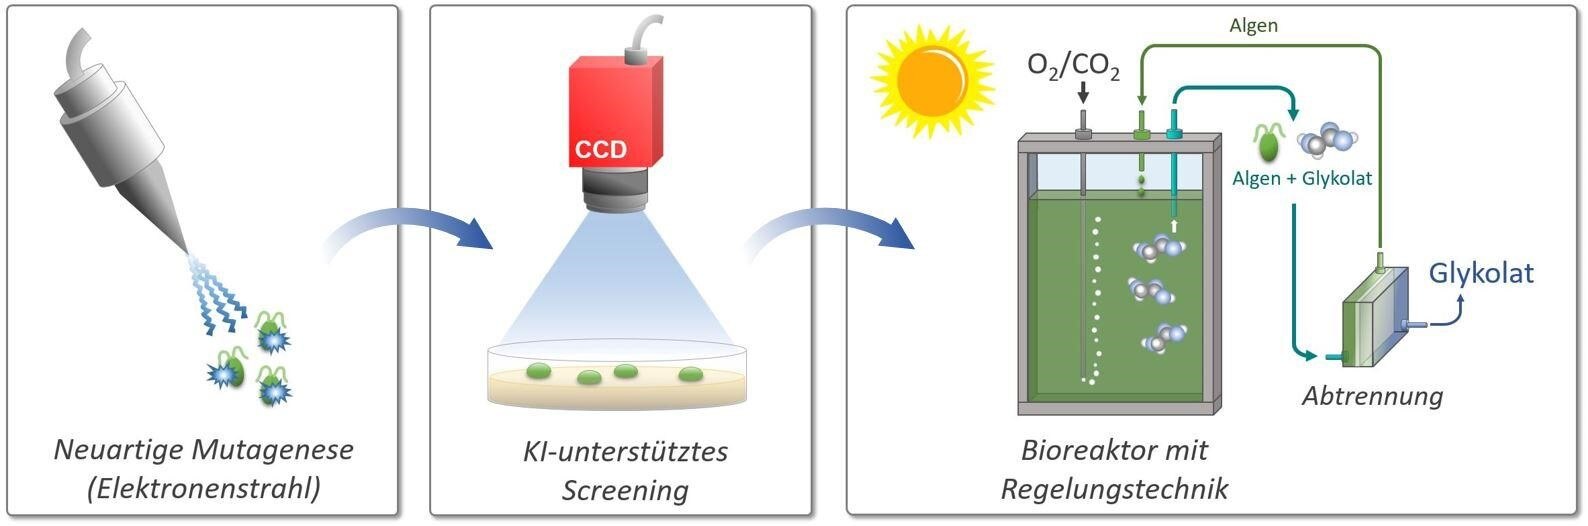 Schematische Darstellungen zu Mutagenese, KI-unterstütztem Screening und einem Bioreaktor mit Regelungstechnik